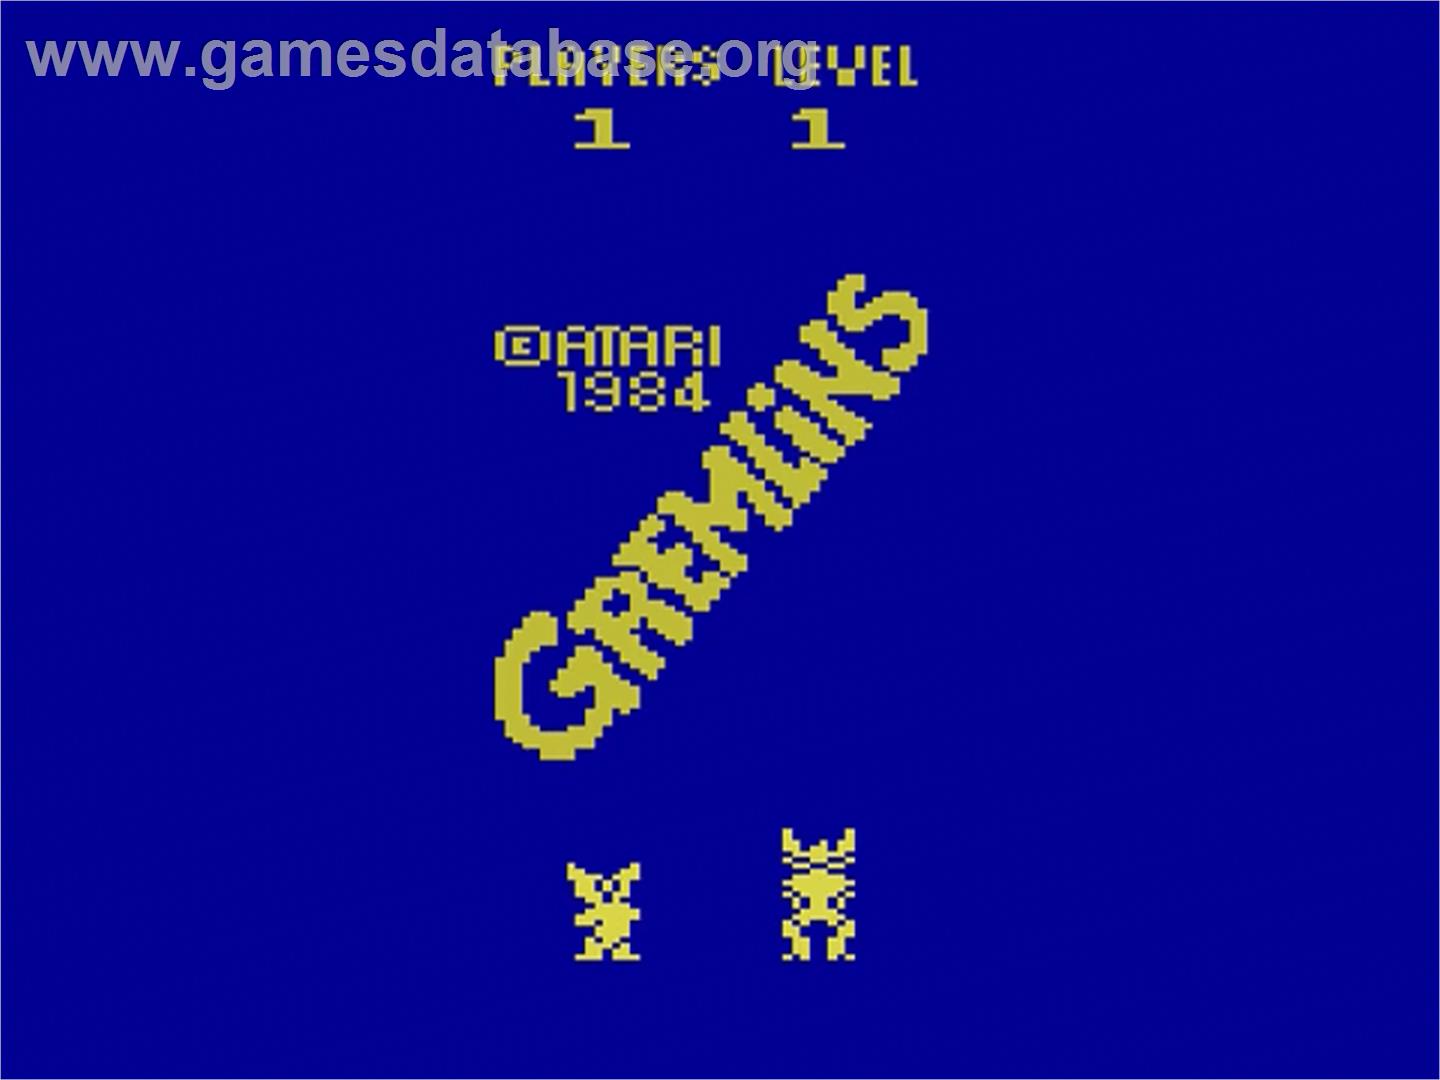 Gremlins - Atari 2600 - Artwork - Title Screen